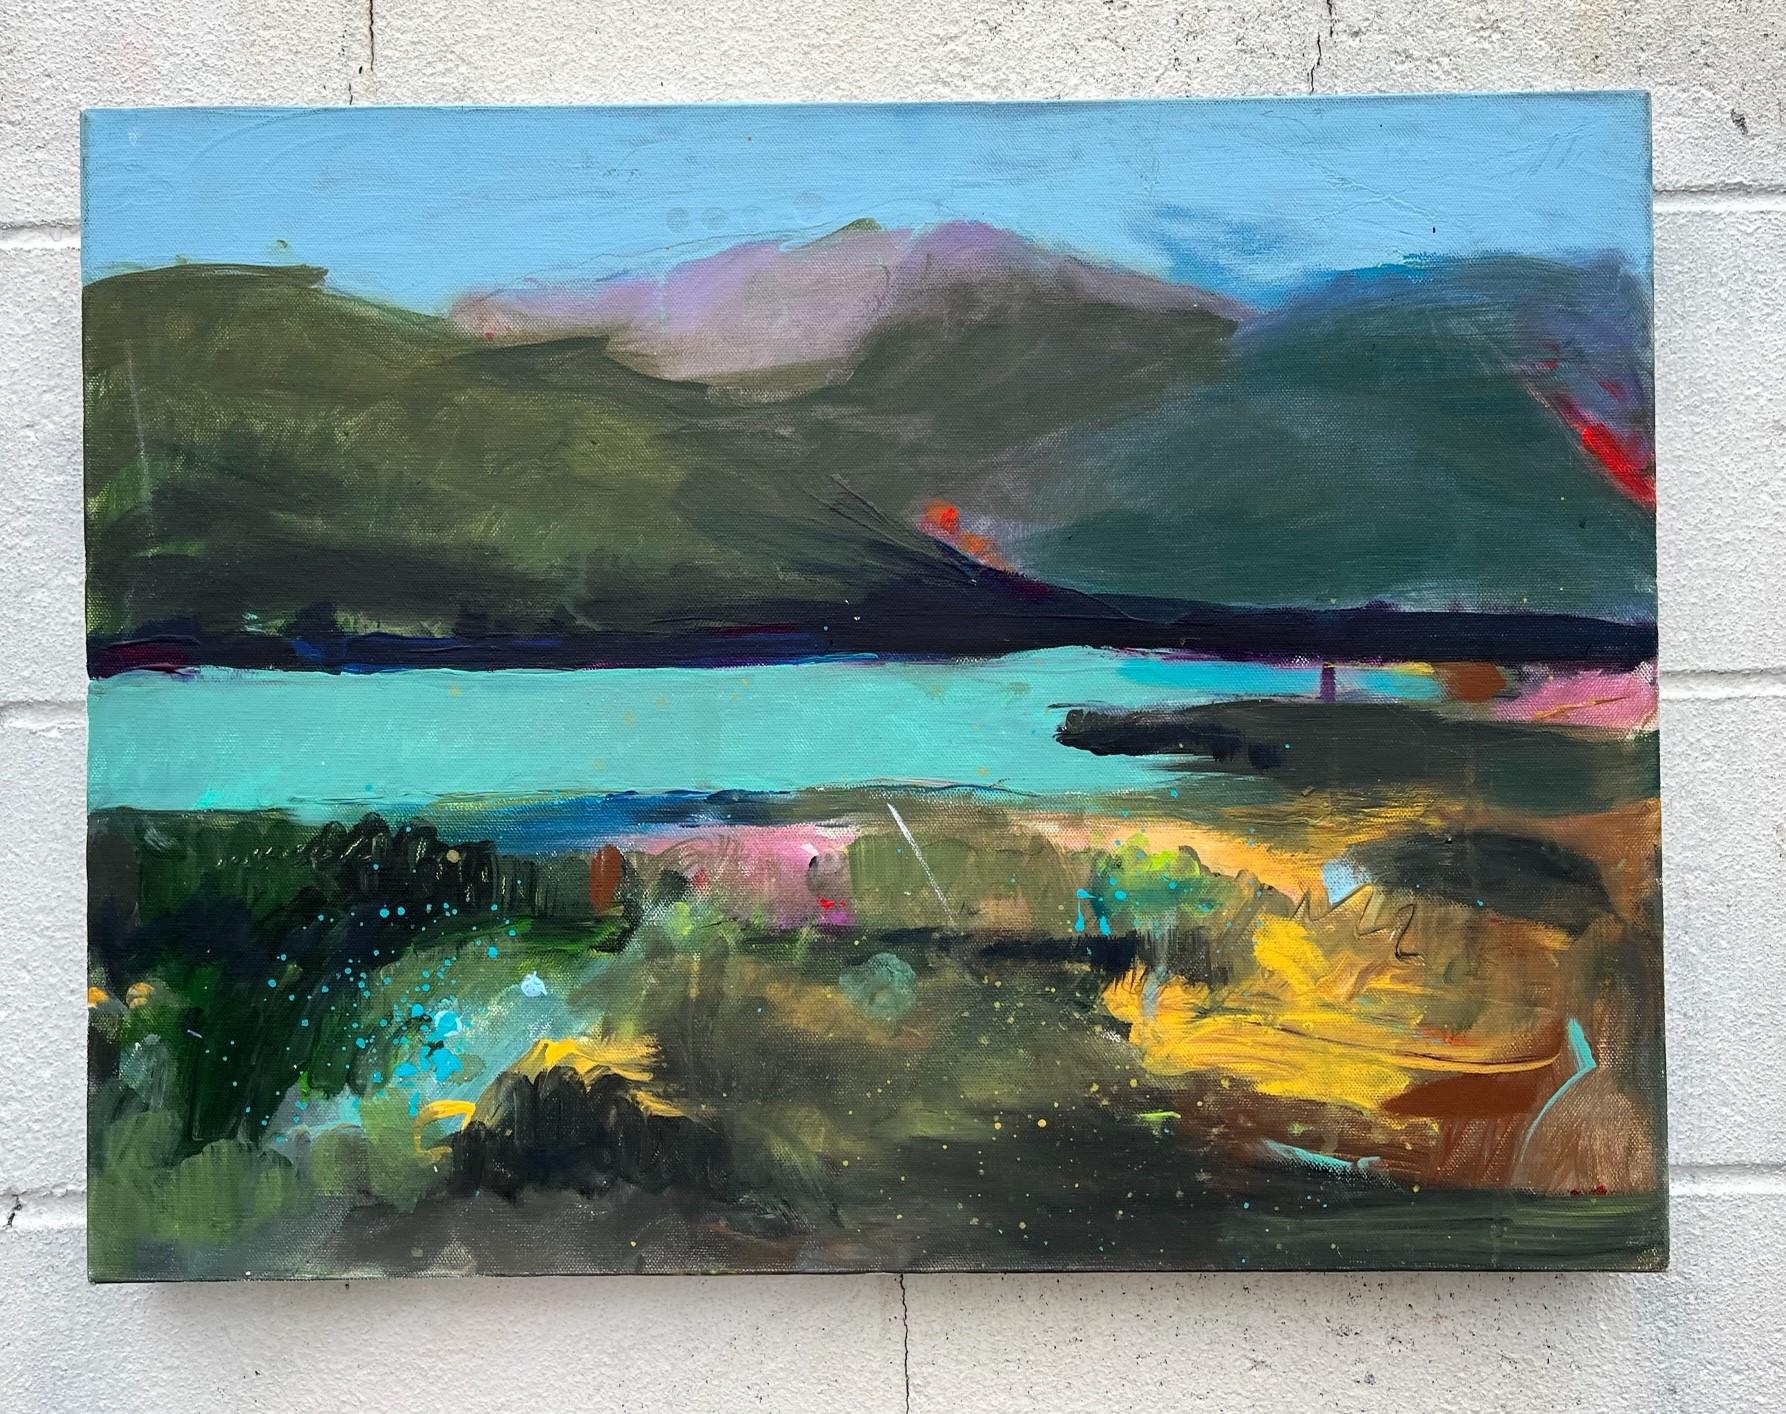 Peinture abstraite - Swim at Lunch ( Swim at Lunch) - Le lac au déjeuner - Abstrait Painting par Rebecca Klementovich